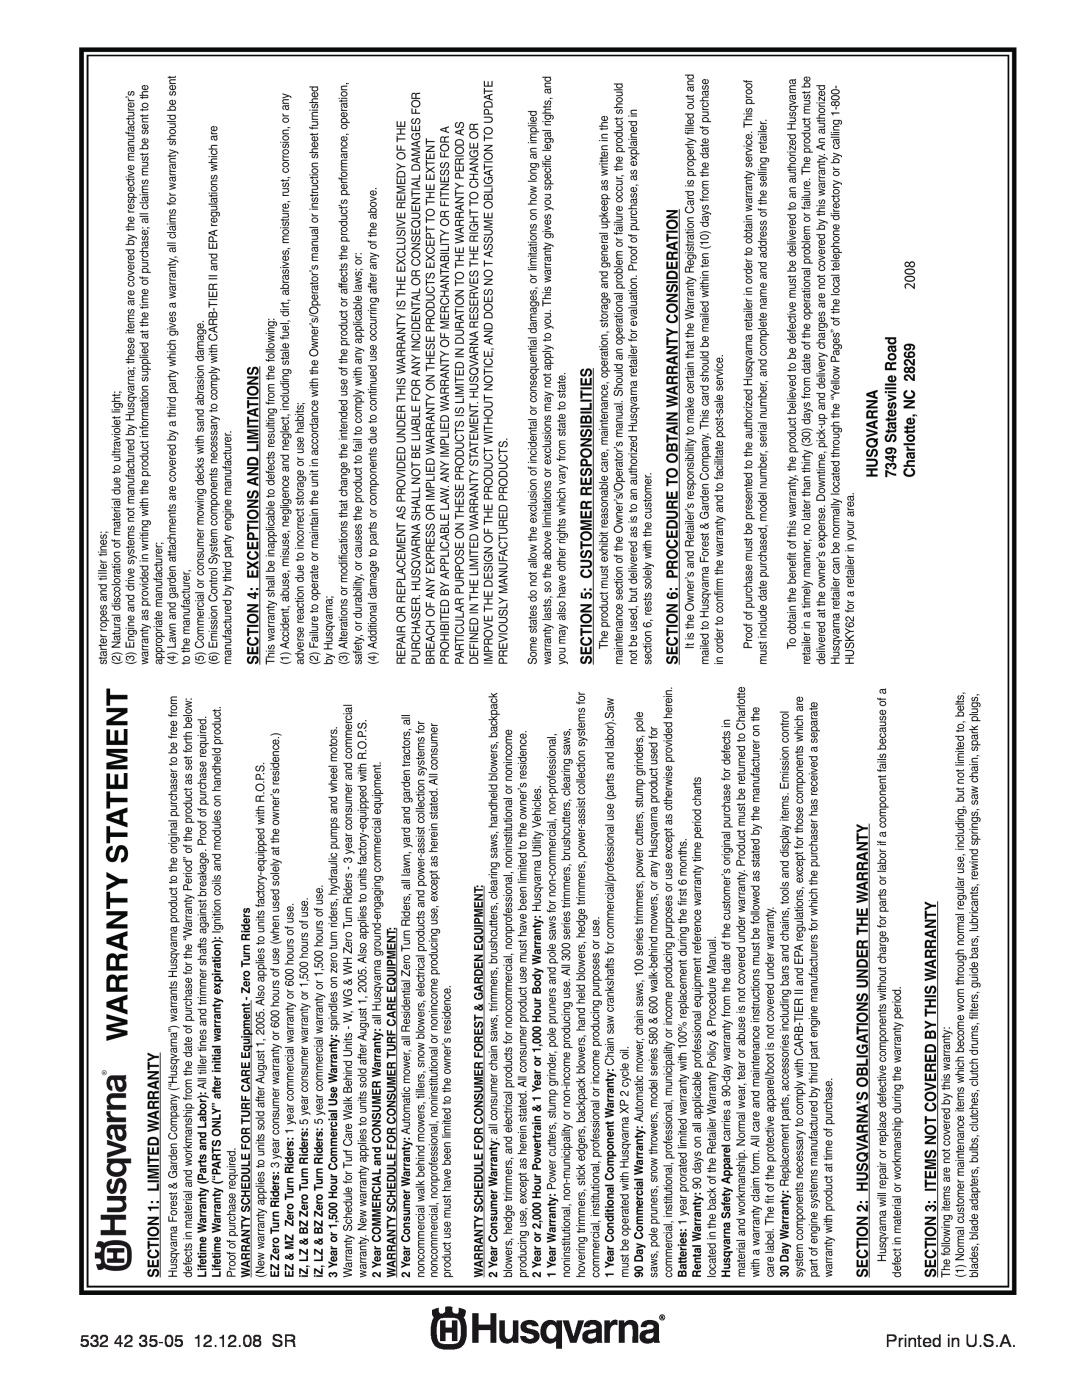 Husqvarna 1130SB-XLSB Warranty Statement, Limited Warranty, Husqvarna’S Obligations Under The Warranty, Statesville Road 